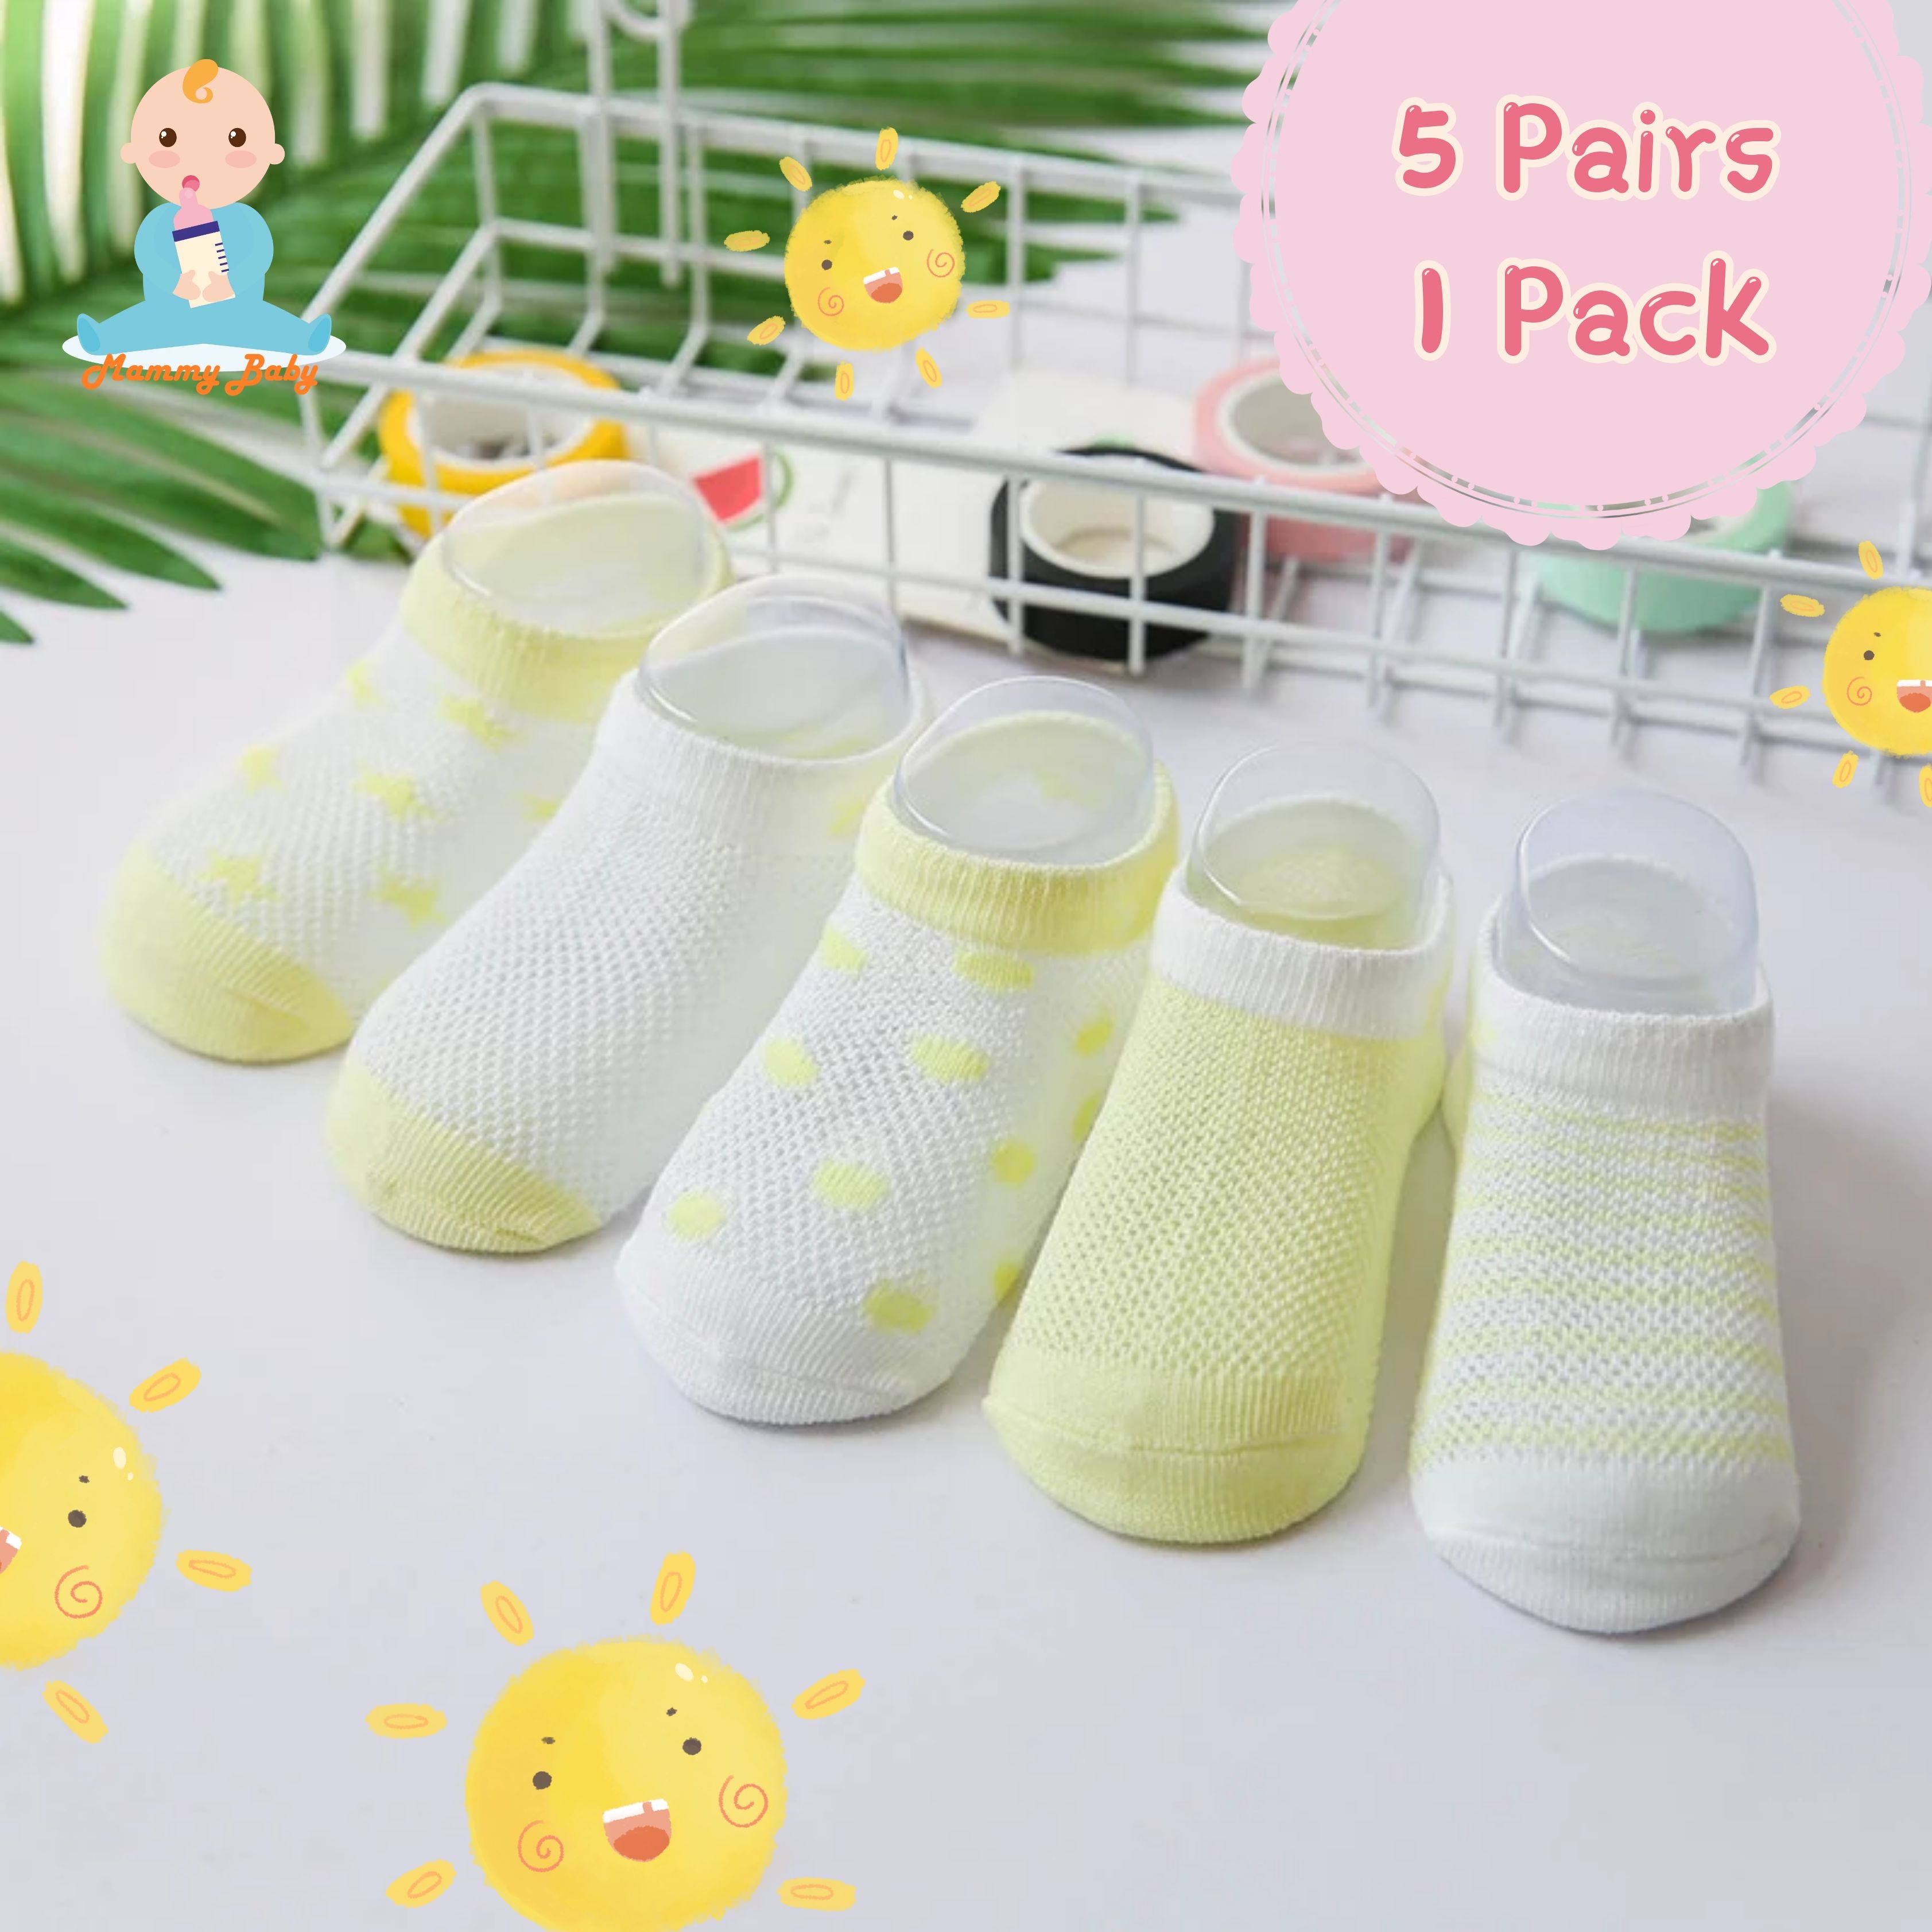 #สุดคุ้ม!!!#MAMMY BABY Boys & Girls Multi-Design socks Size-XS (0-1ขวบ) ความยาว  S1-10cm ถุงเท้าเด็ก ถุงเท้าแฟชั่นถุงเท้า style เกาหลี 1เซต5คู่5สี (5 pair/pack )ระบายอากาศได้ดี ใ